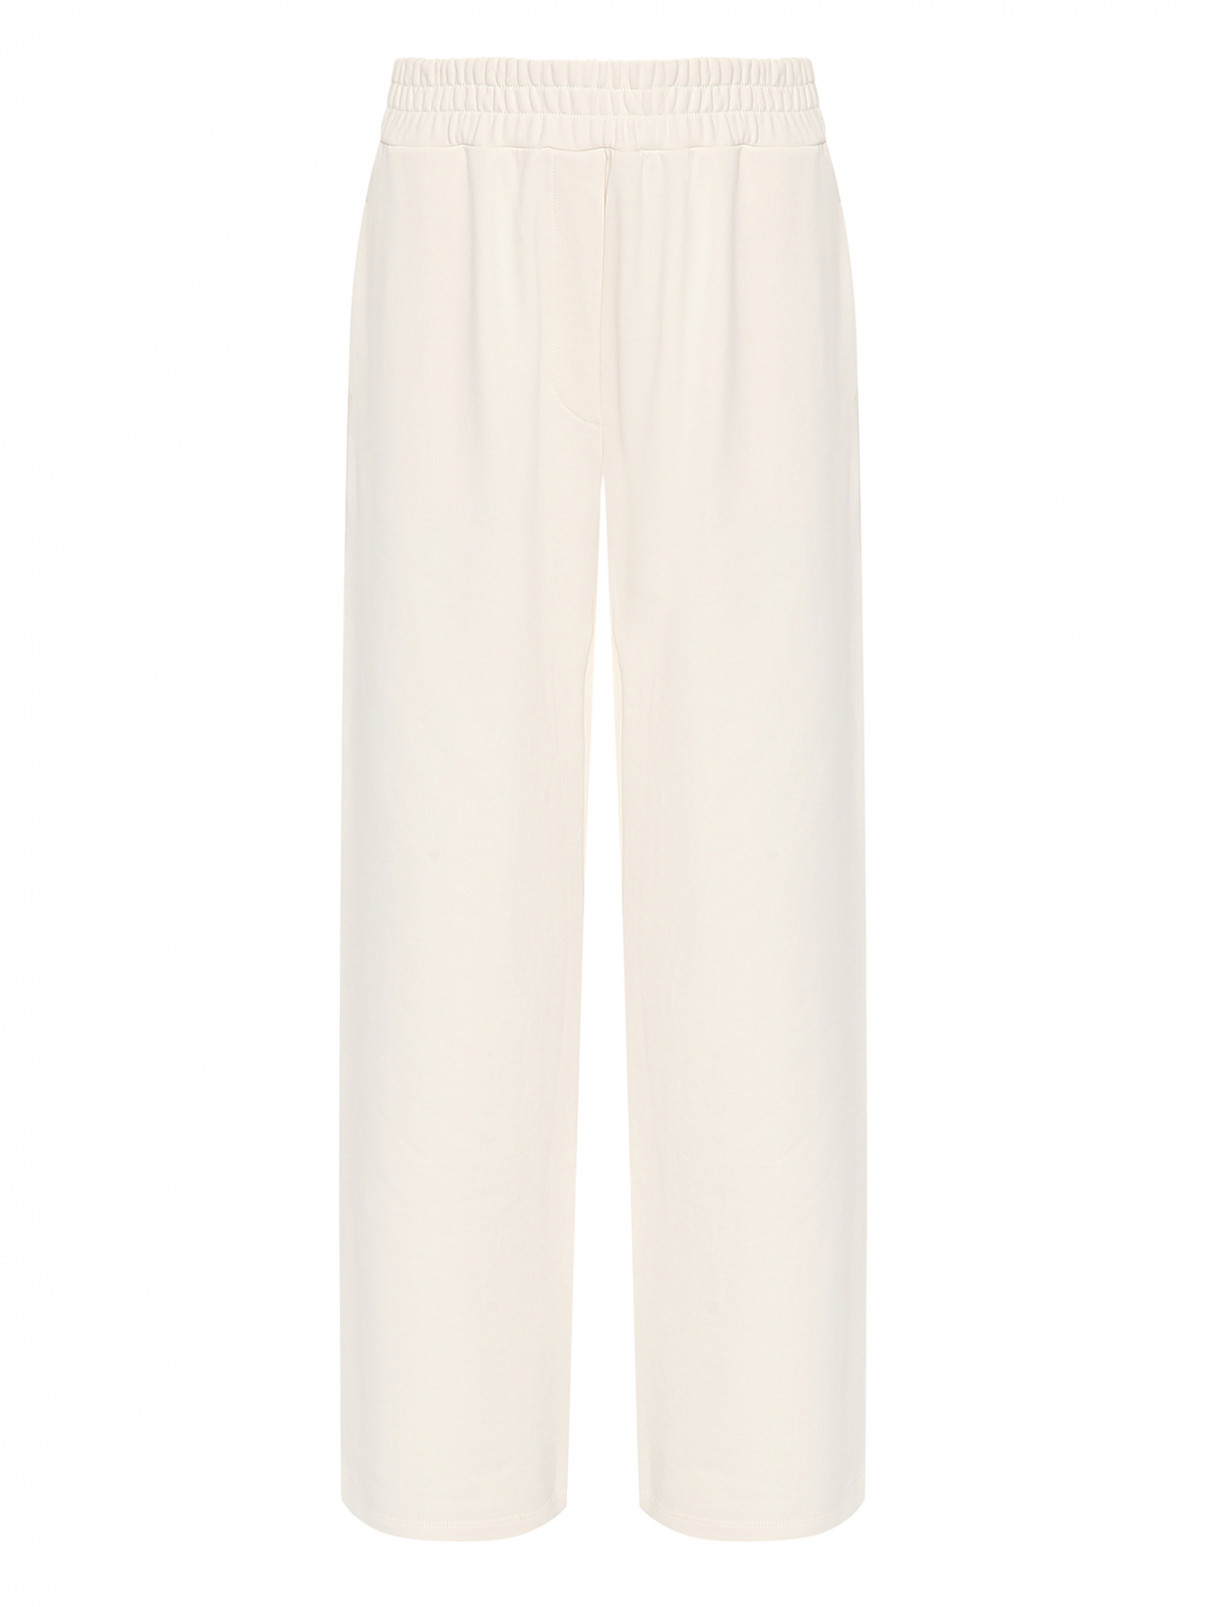 Широкие хлопковые брюки на резинке Weekend Max Mara  –  Общий вид  – Цвет:  Бежевый